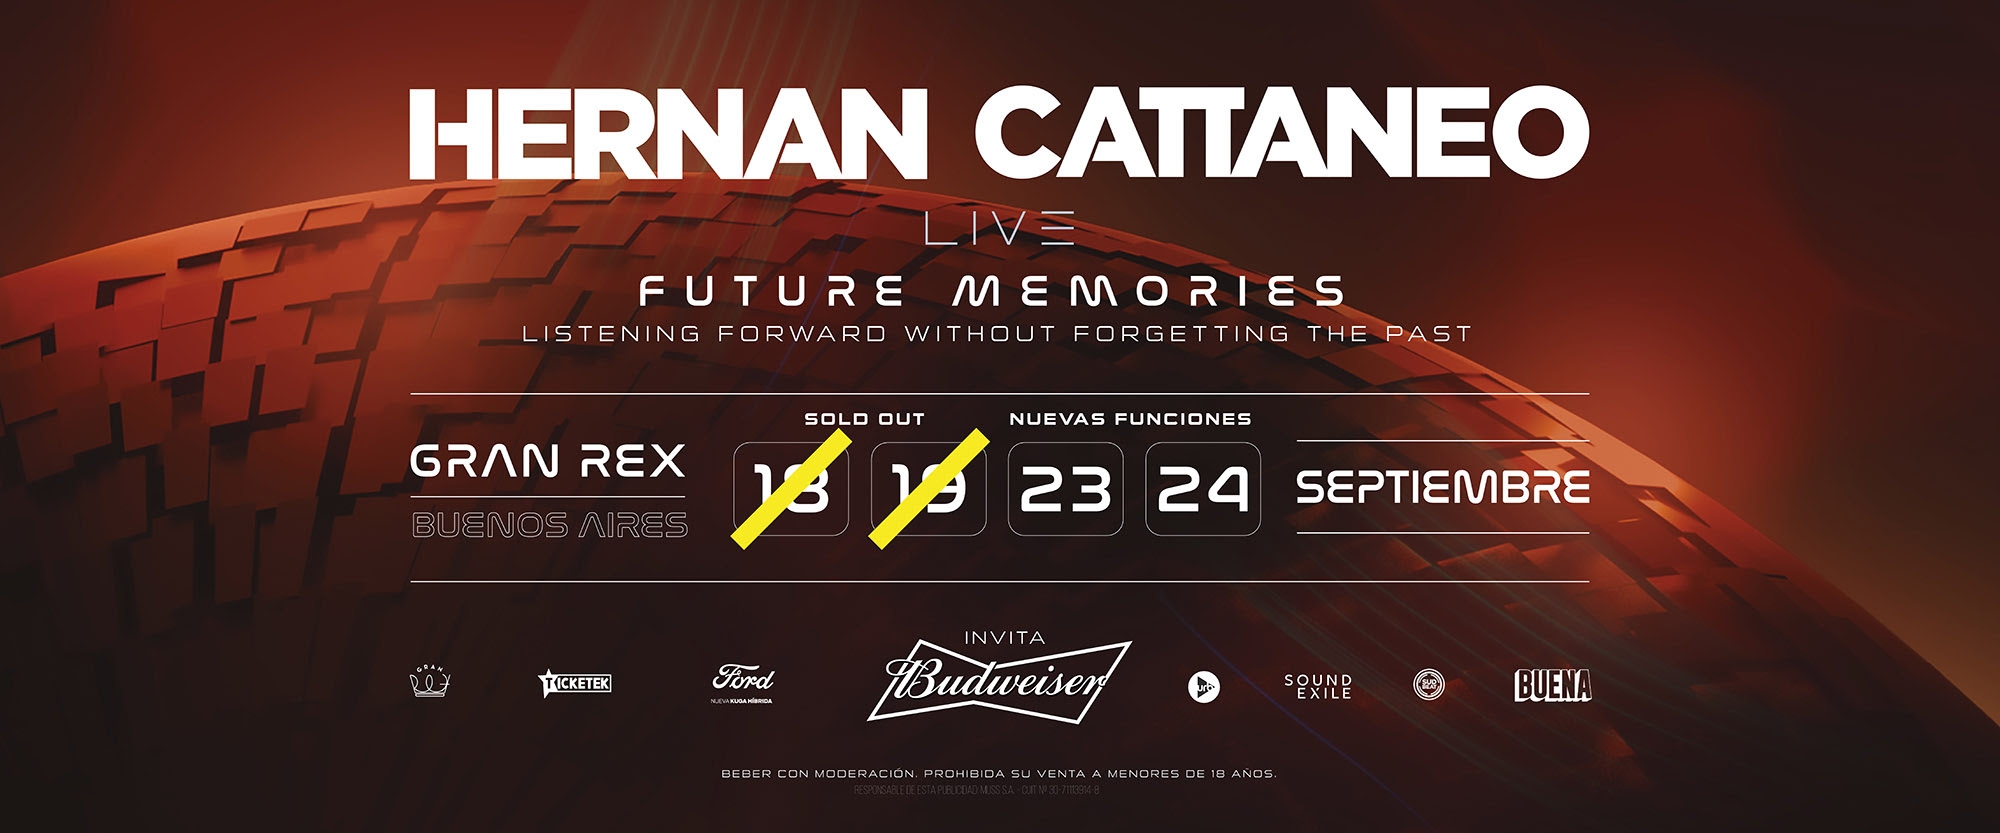 Nuevas Funciones: Hernan Cattaneo - Future Memories: 23 y 24 de septiembre en el Gran Rex!